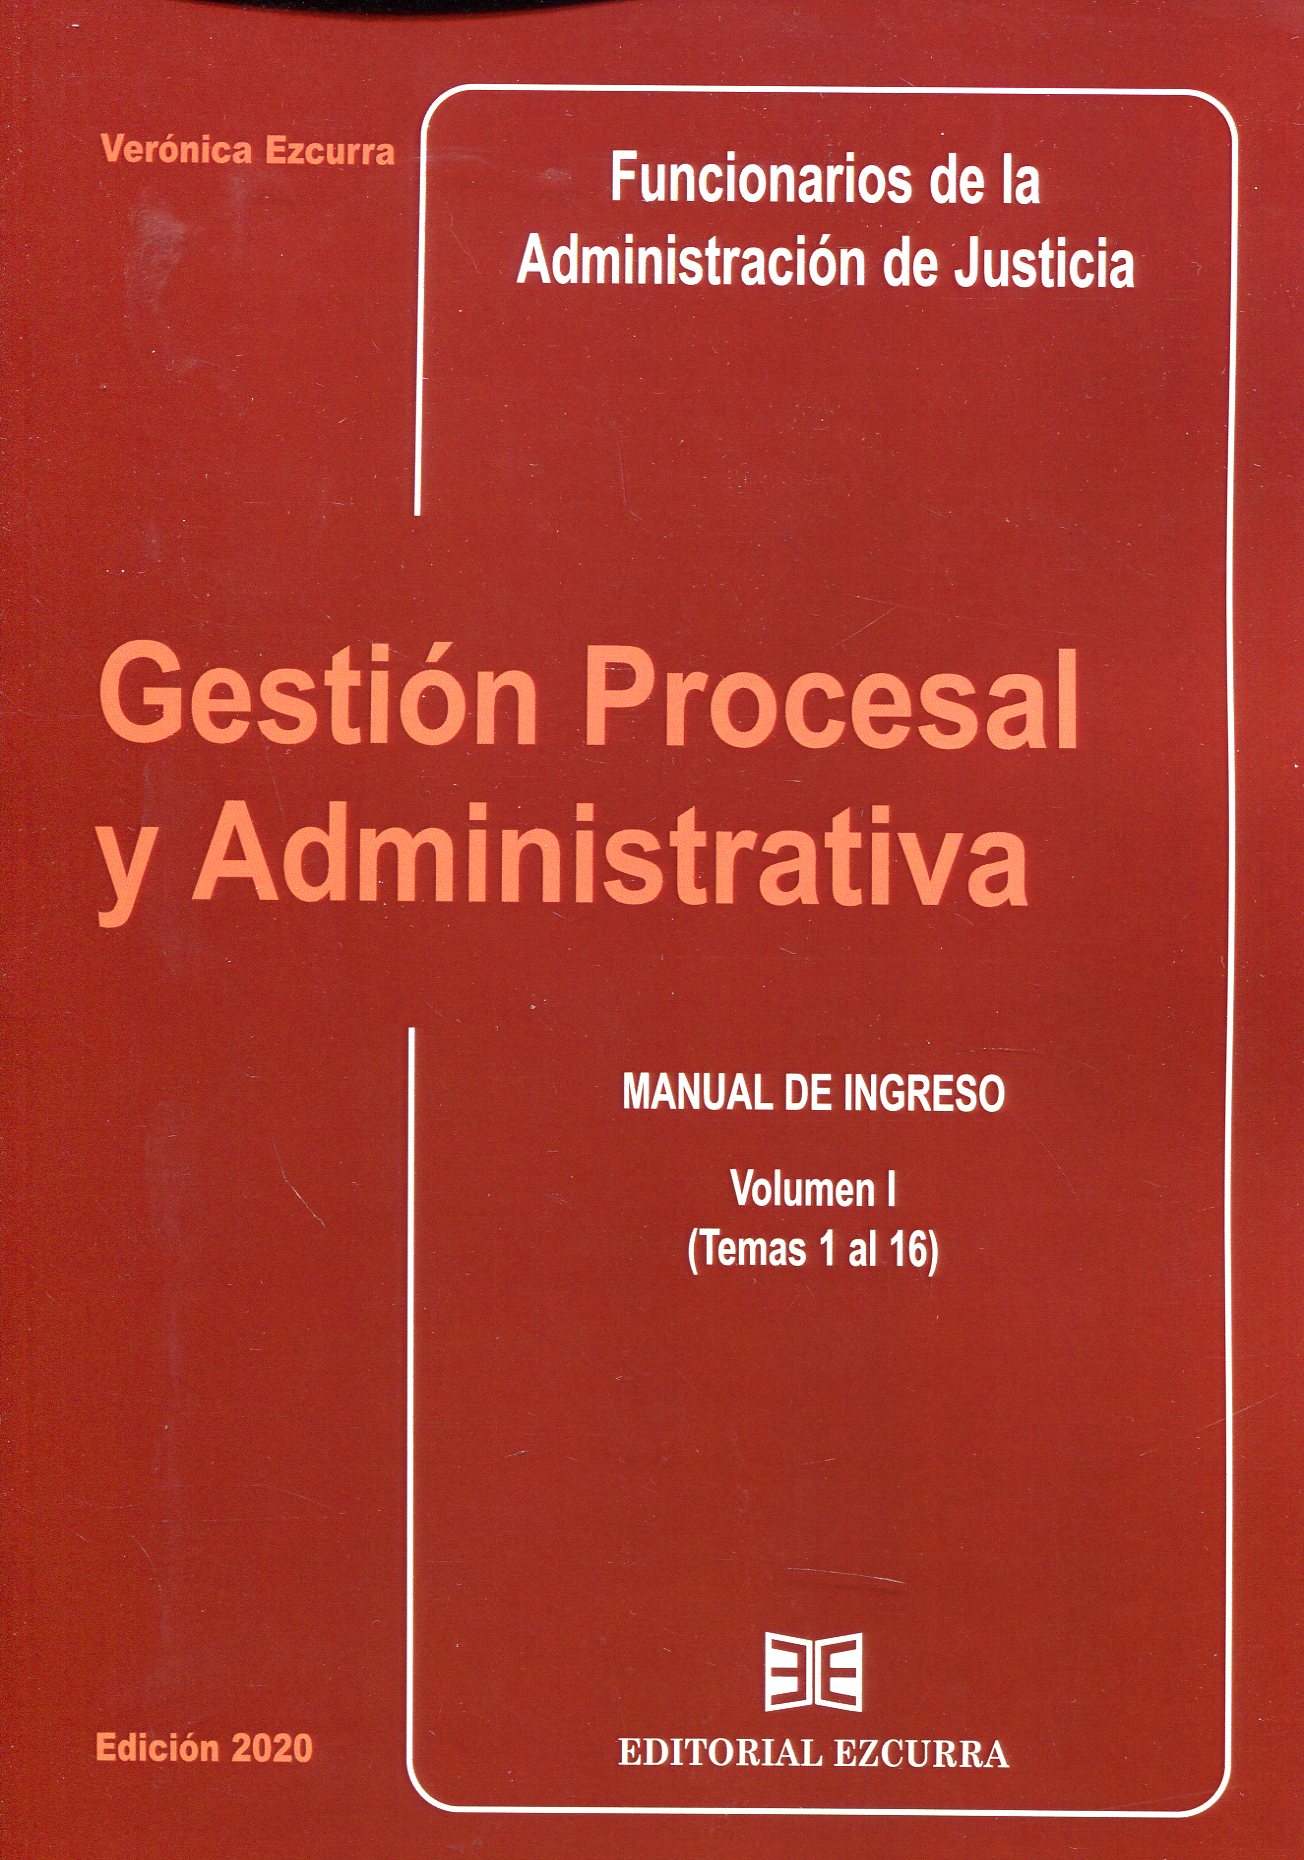 Gestion procesal y administrativa para Funcionarios de la Administración de Justicia